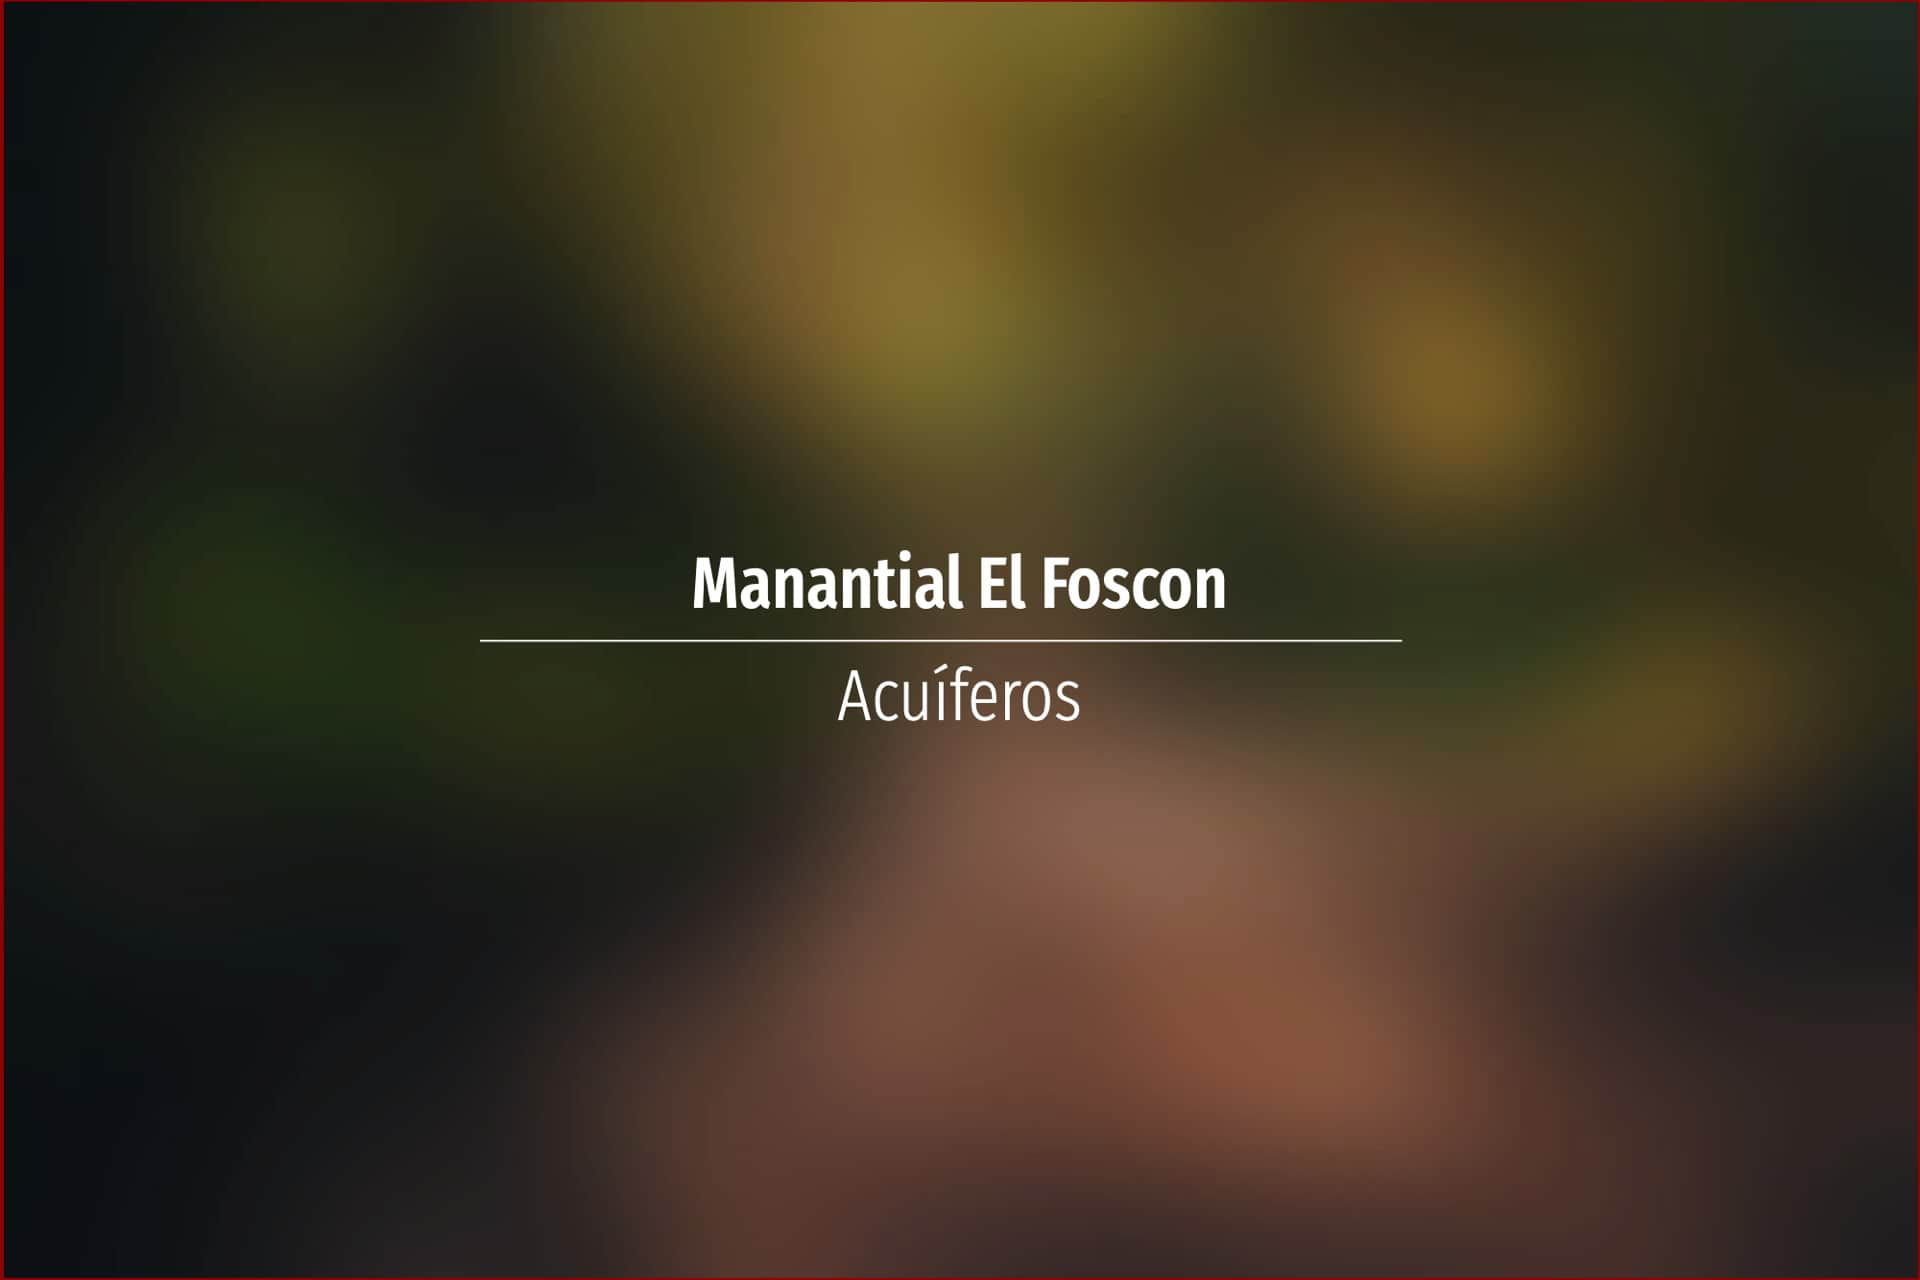 Manantial El Foscon